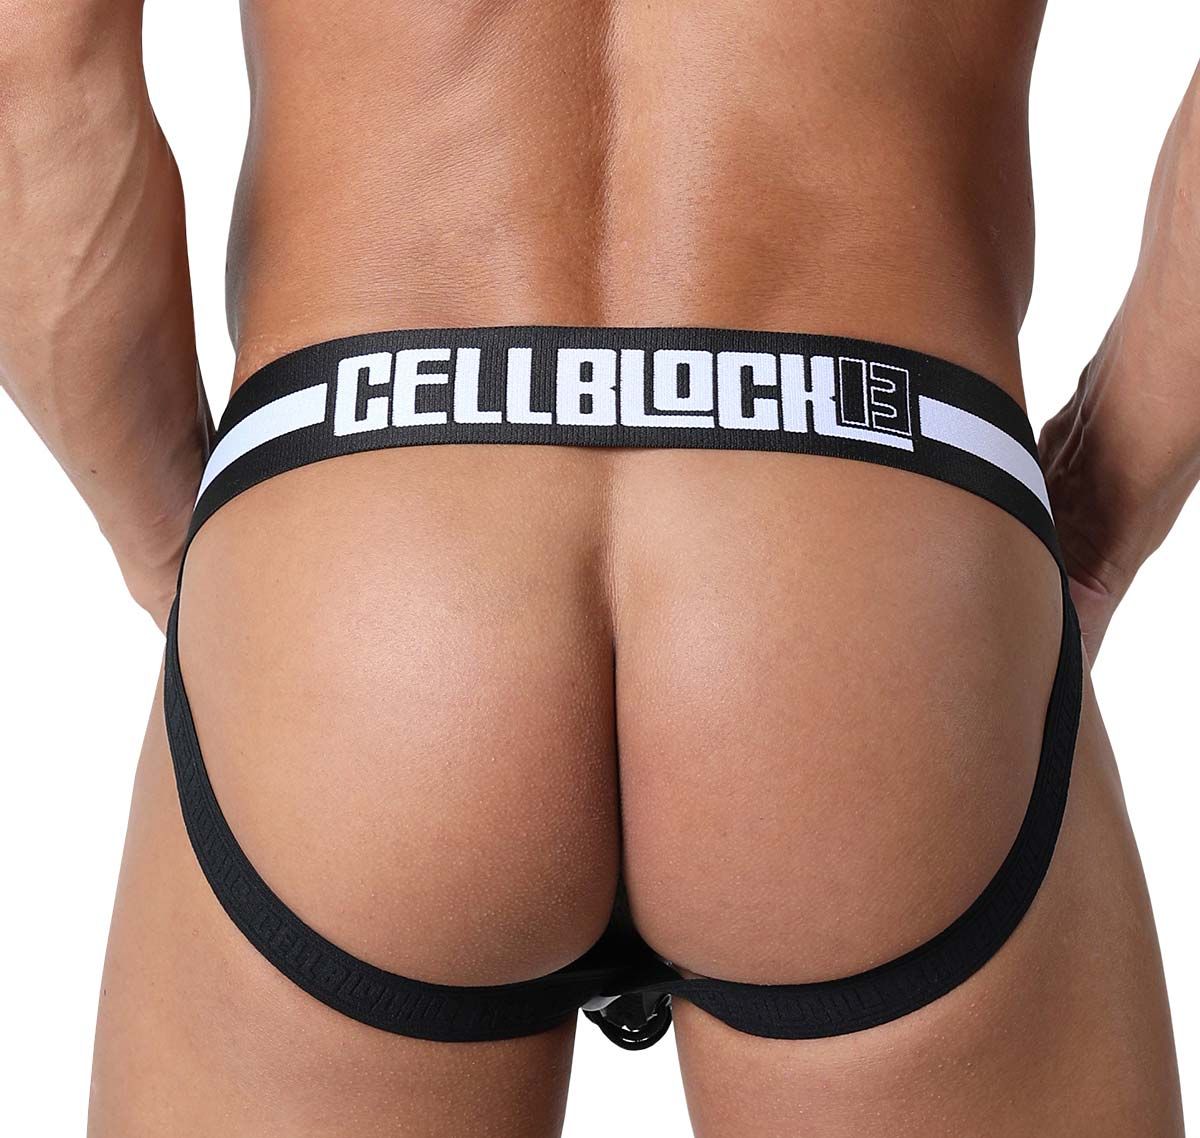 Cellblock 13 Jockstrap KICK-OFF JOCKSTRAP, blanc